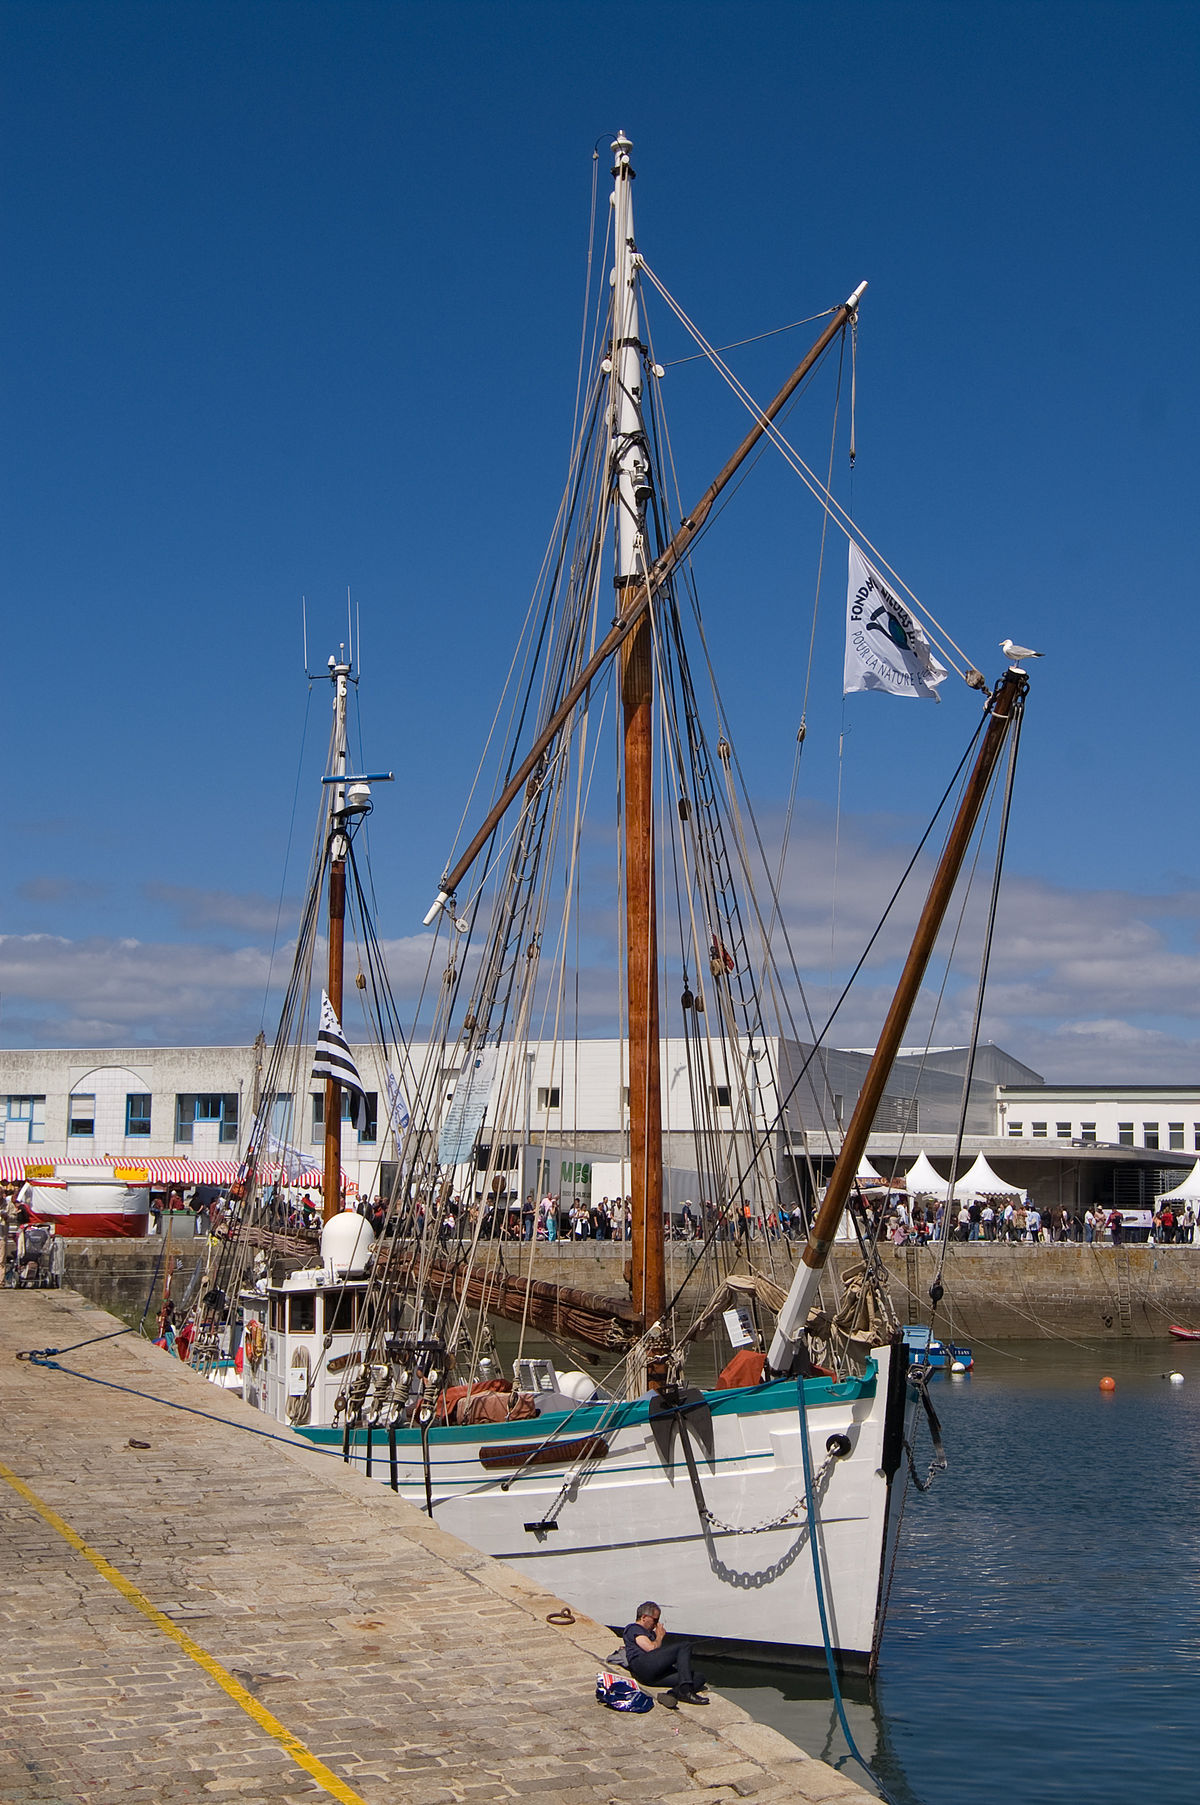 Connaissez-vous tous les termes des bateaux du patrimoine maritime ?